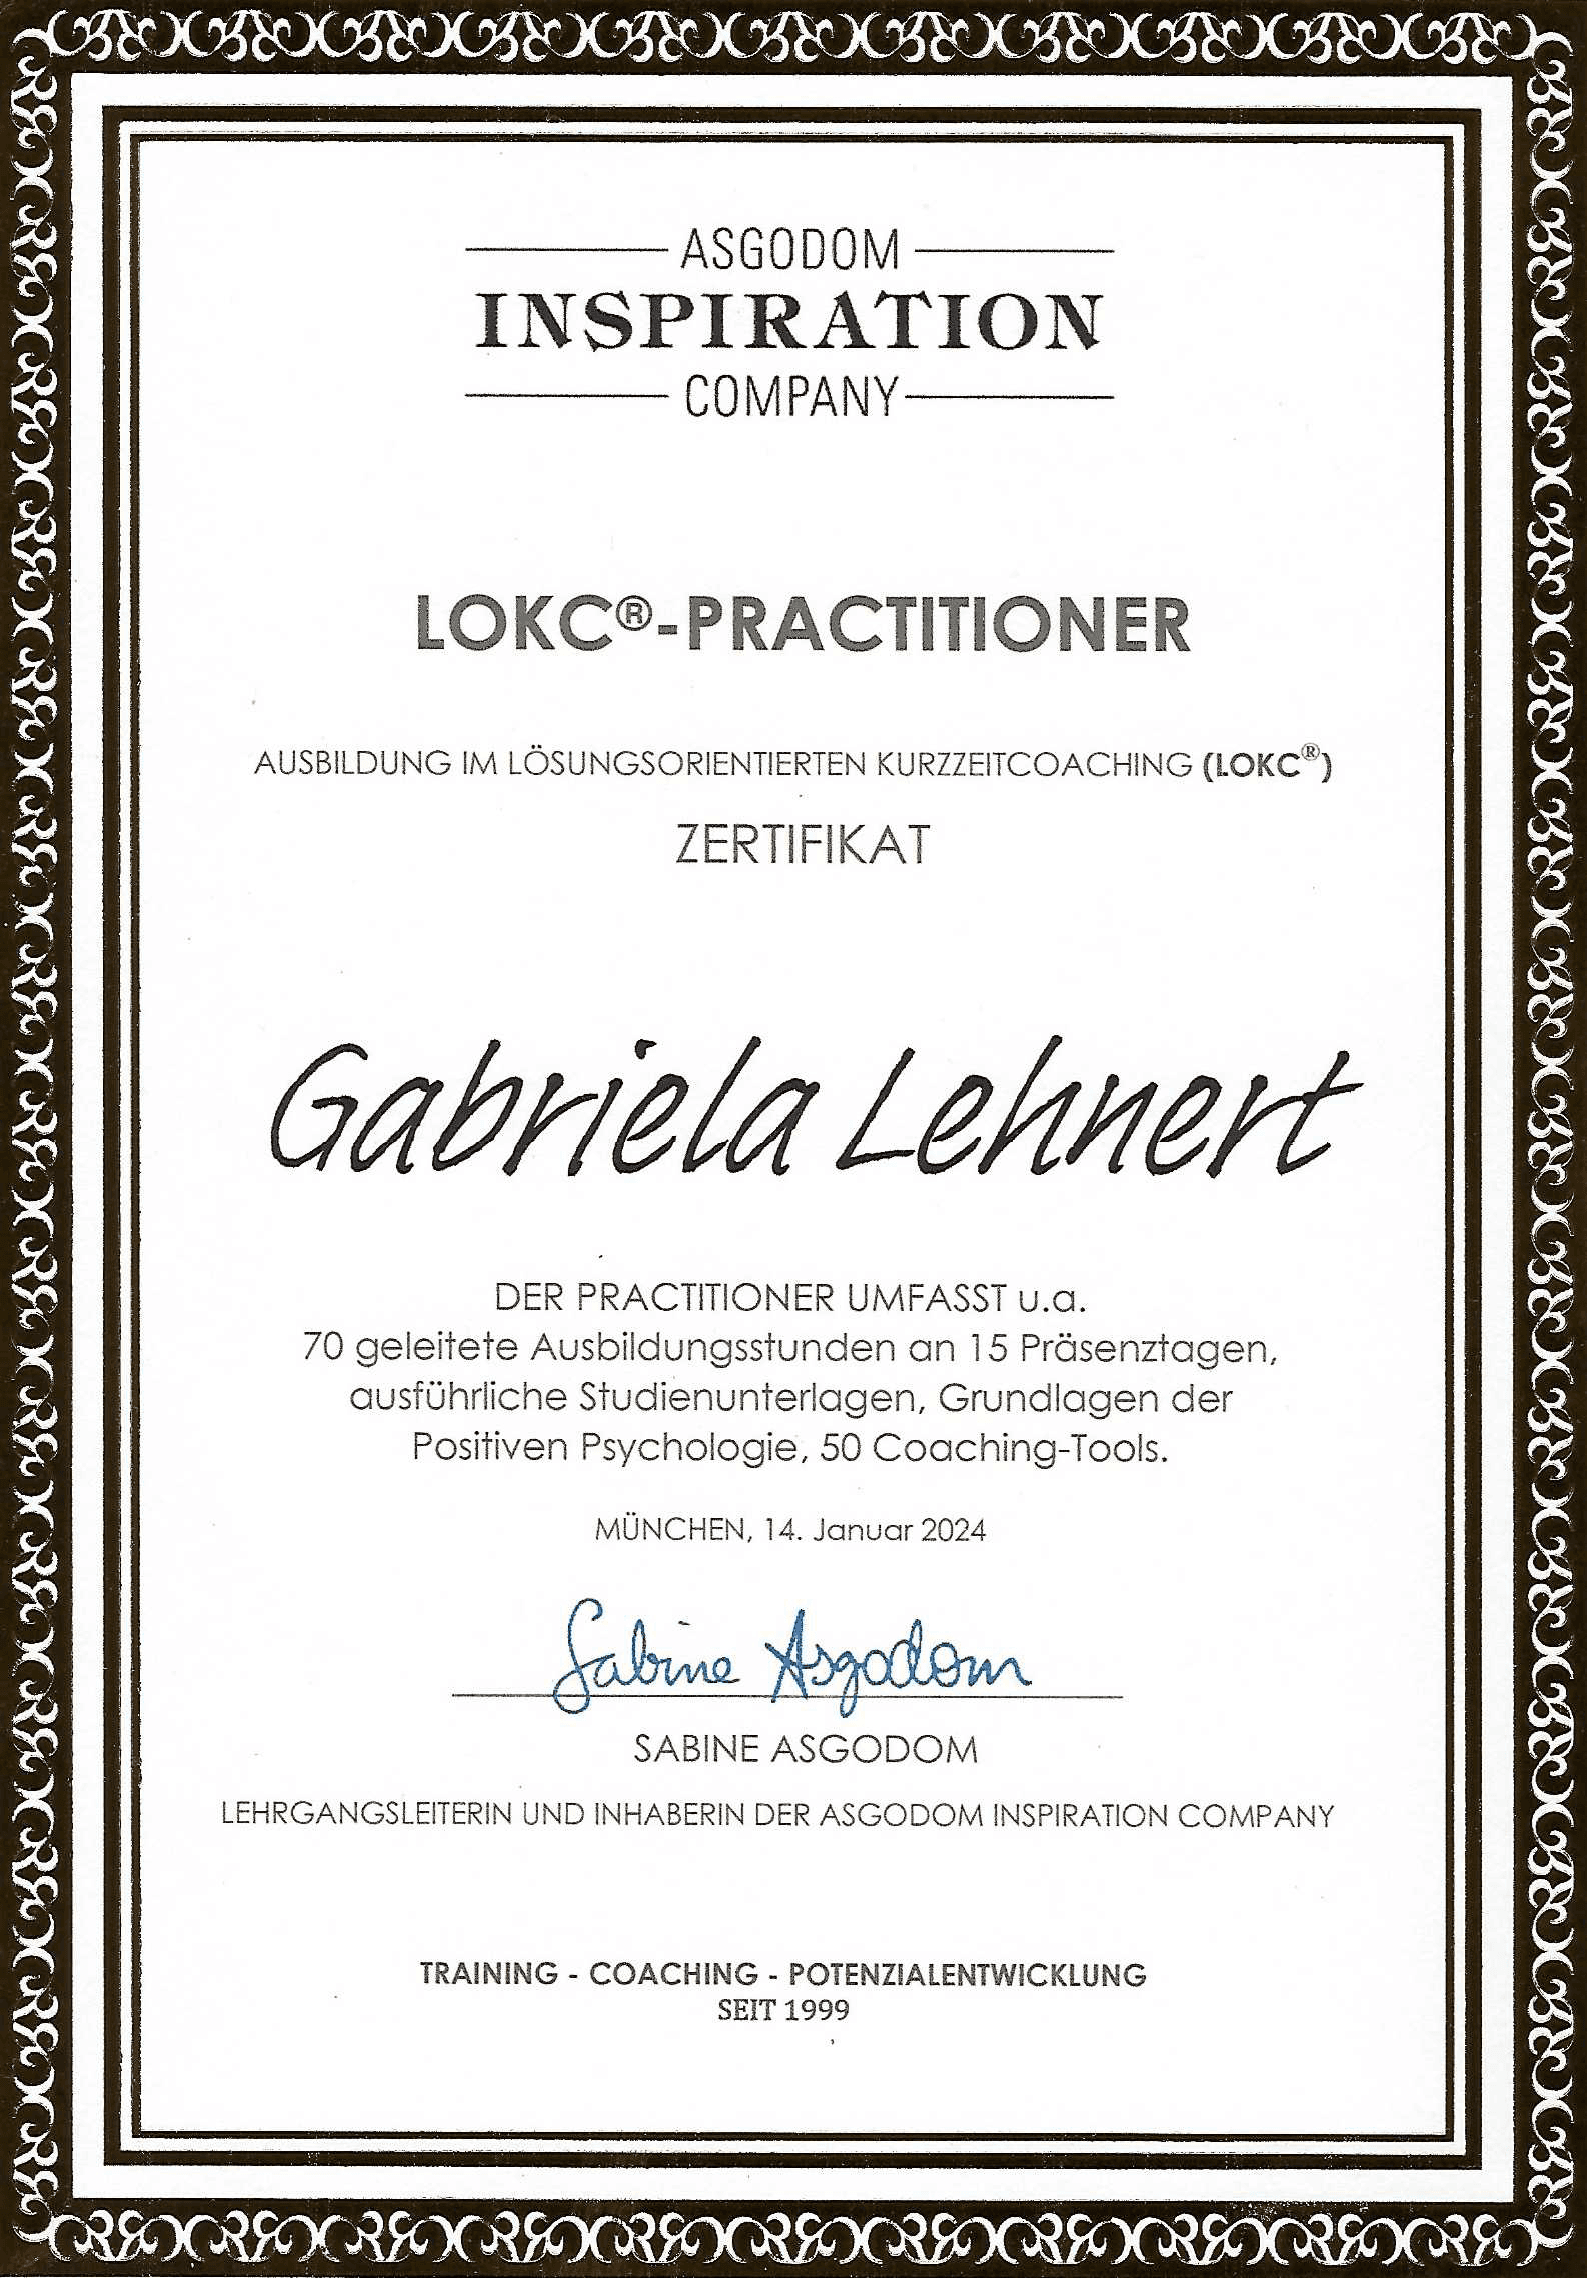 Gabriela Lehnert - Ausbildung im Lösungsorientierten Kurzzeitcoaching (LOKC)